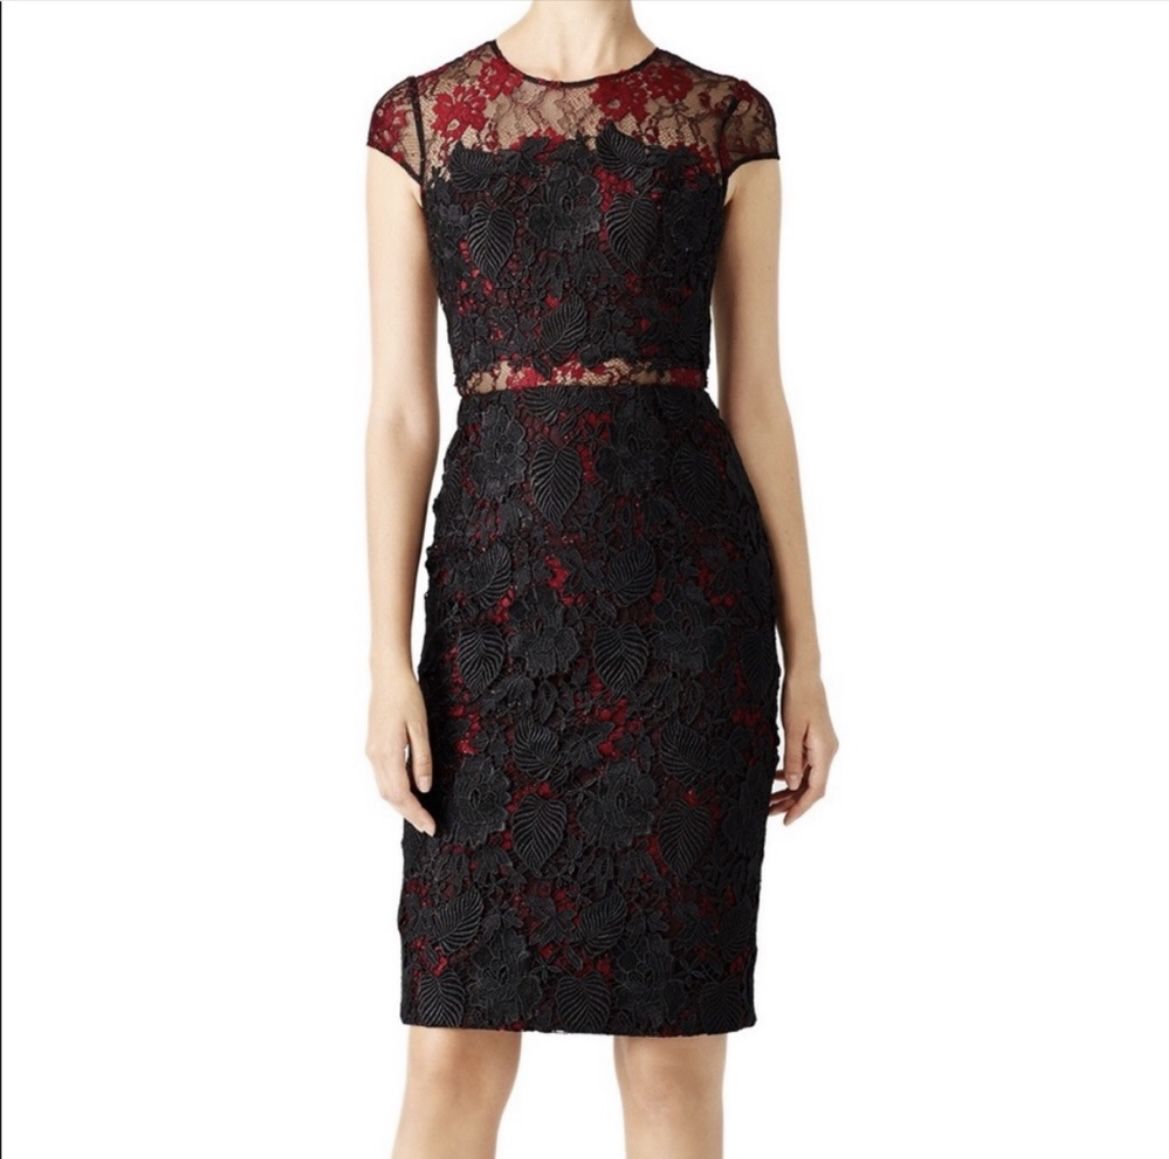 Monique Lhuillier Burgundy Black Lace Dress - Size 4